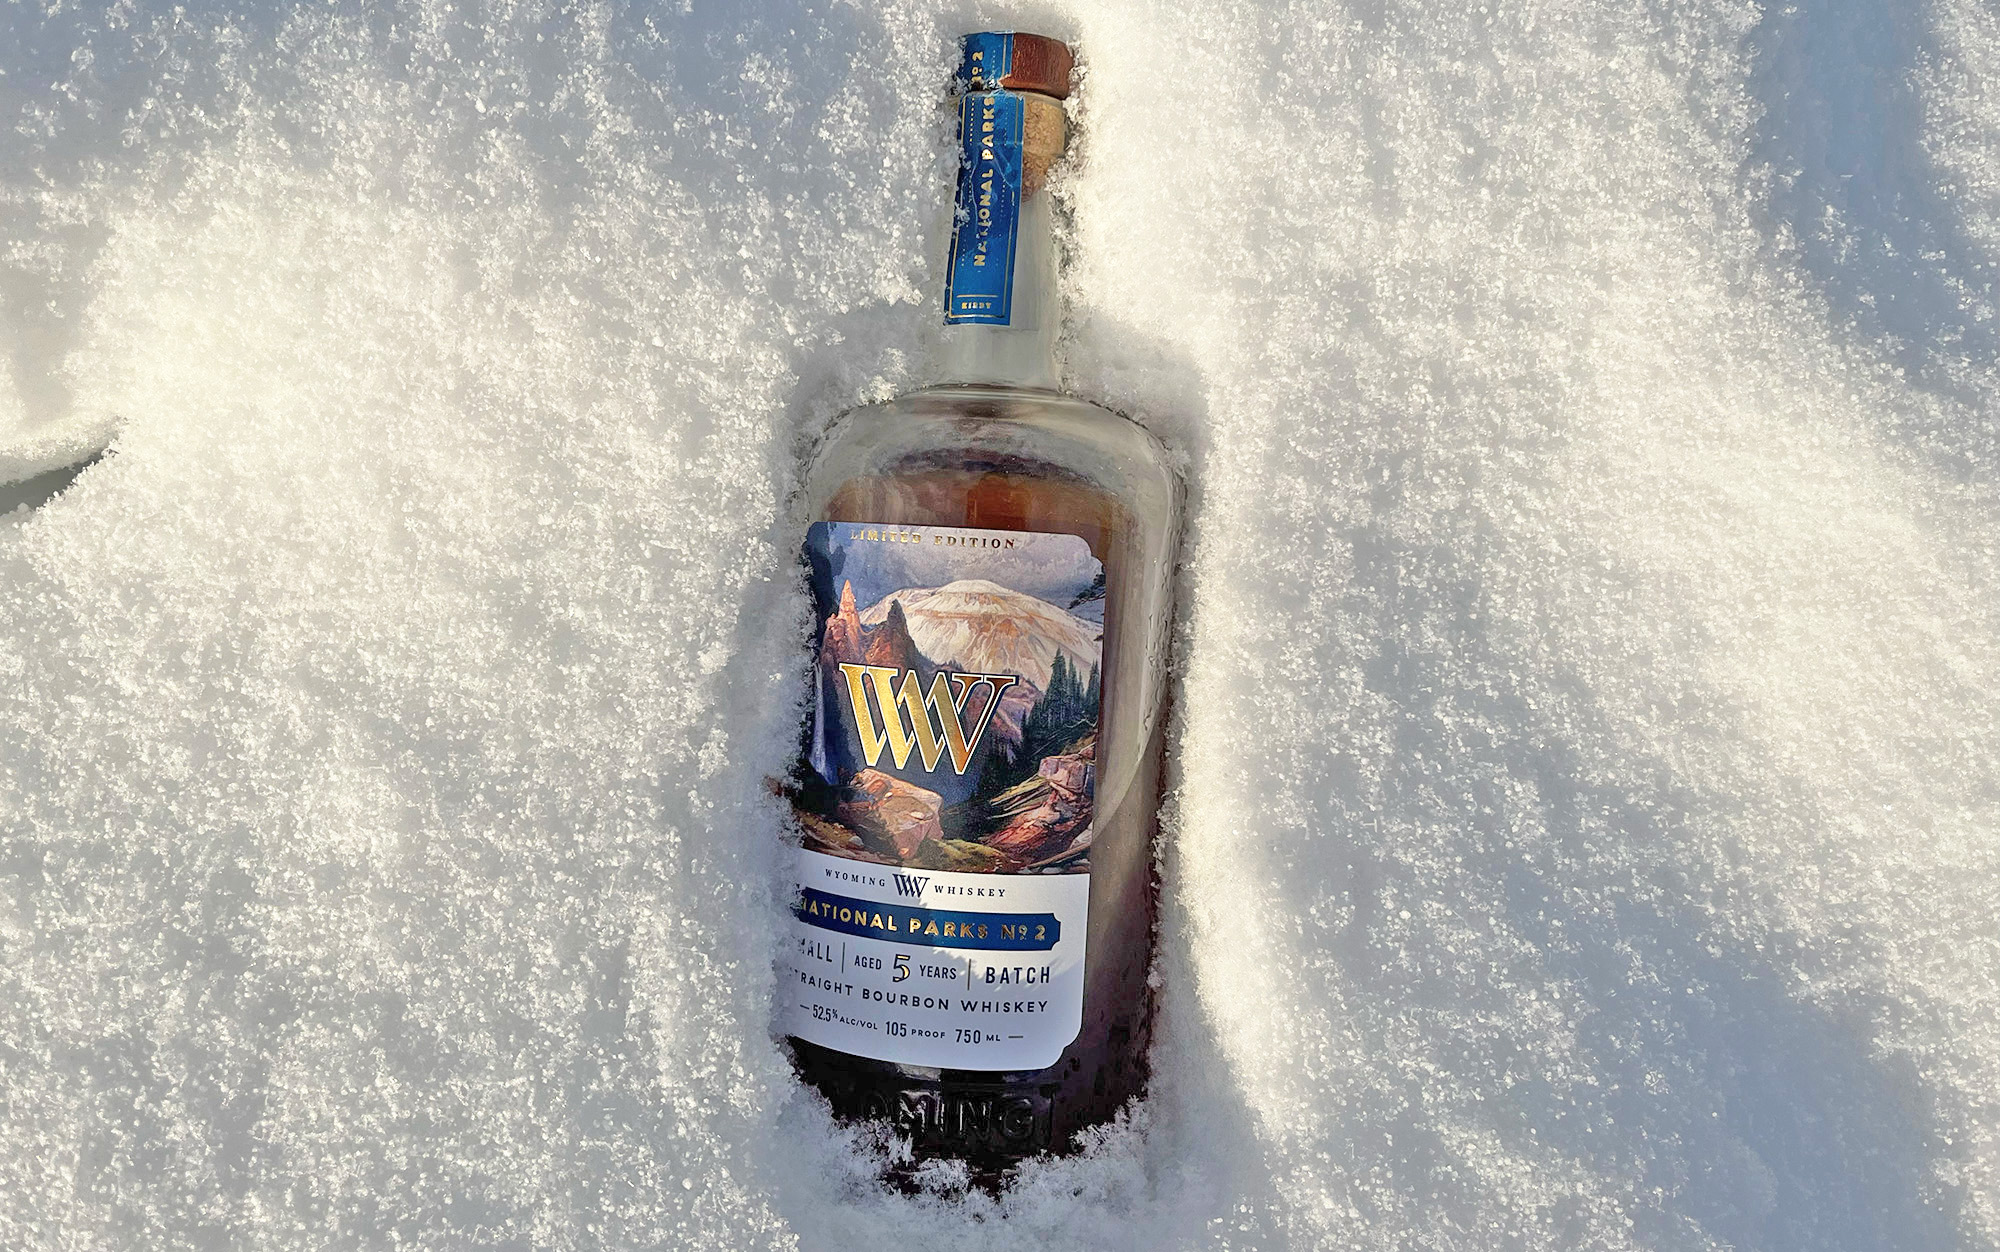 https://www.outdoorlife.com/wp-content/uploads/2023/01/12/Wyoming-Whiskey-bottle.jpg